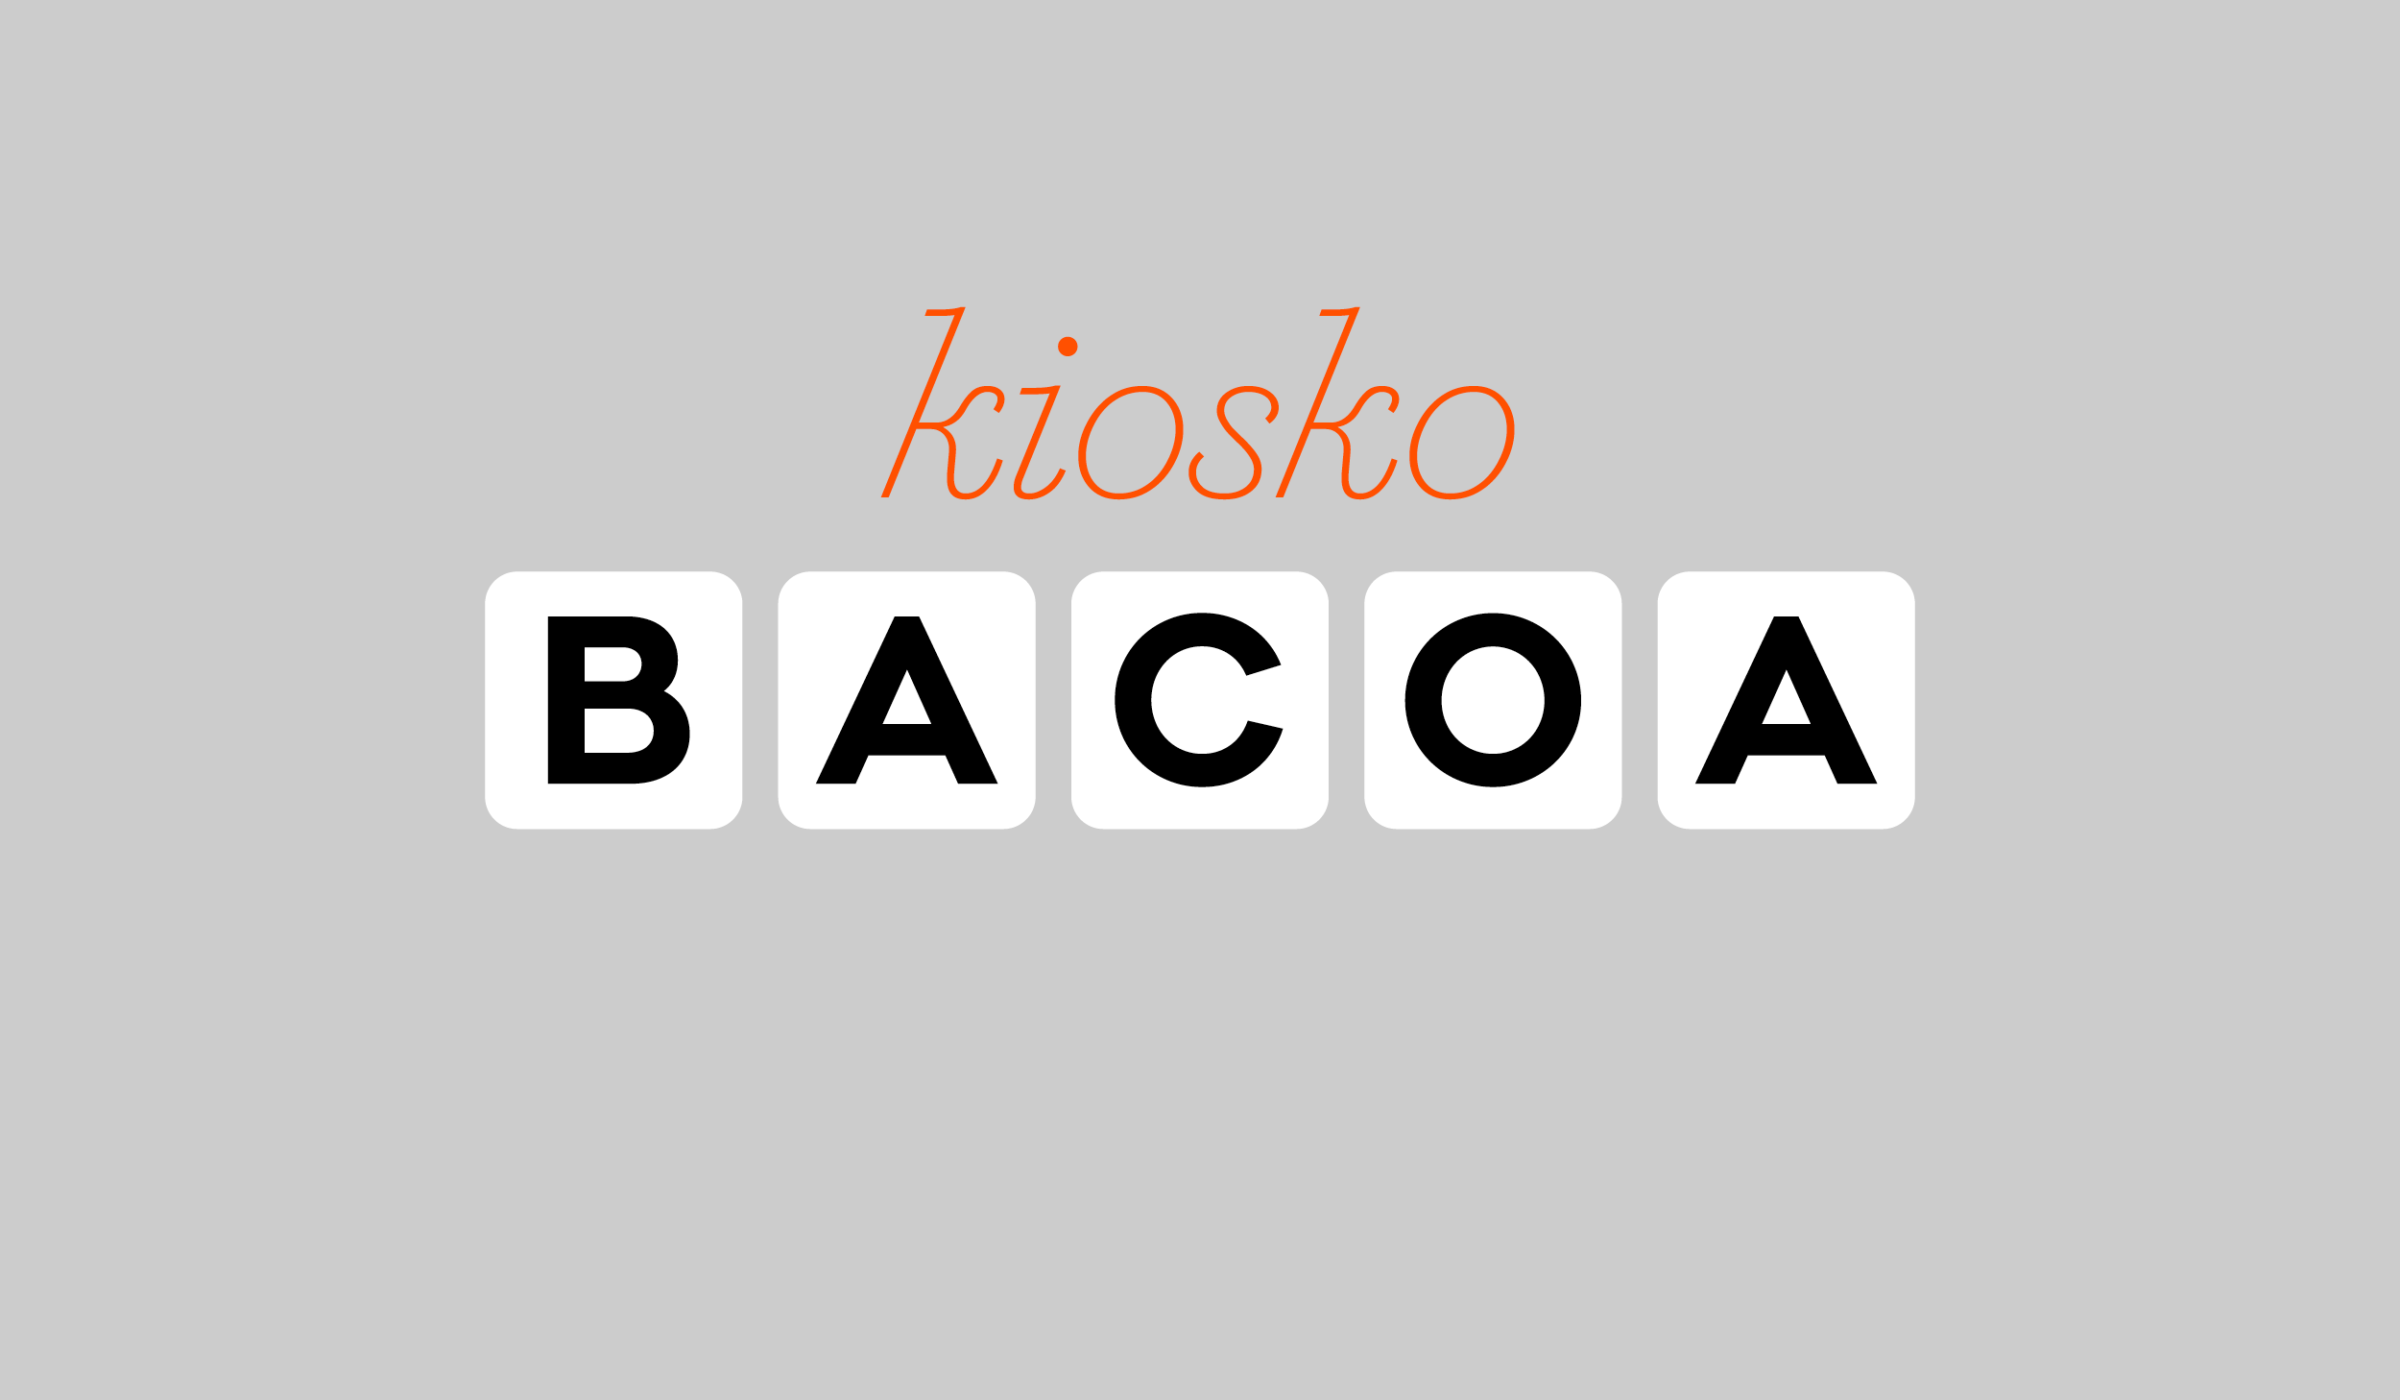 FOLCH - Bacoa